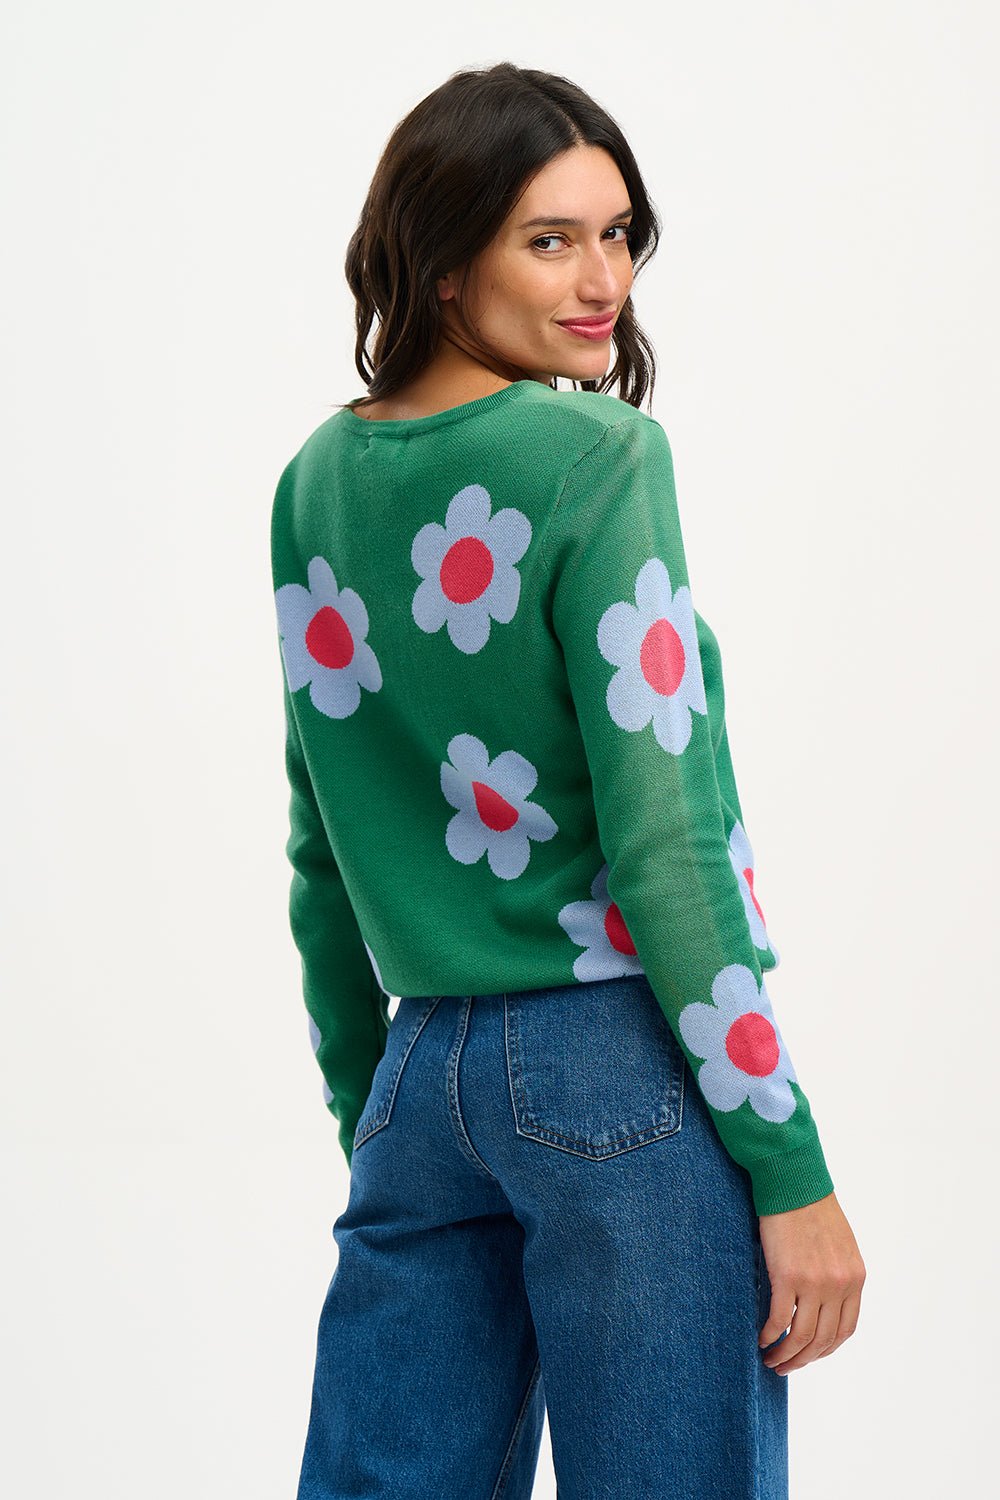 Rowena Jumper - Green Retro Flowers - Rockamilly-Knitwear-Vintage